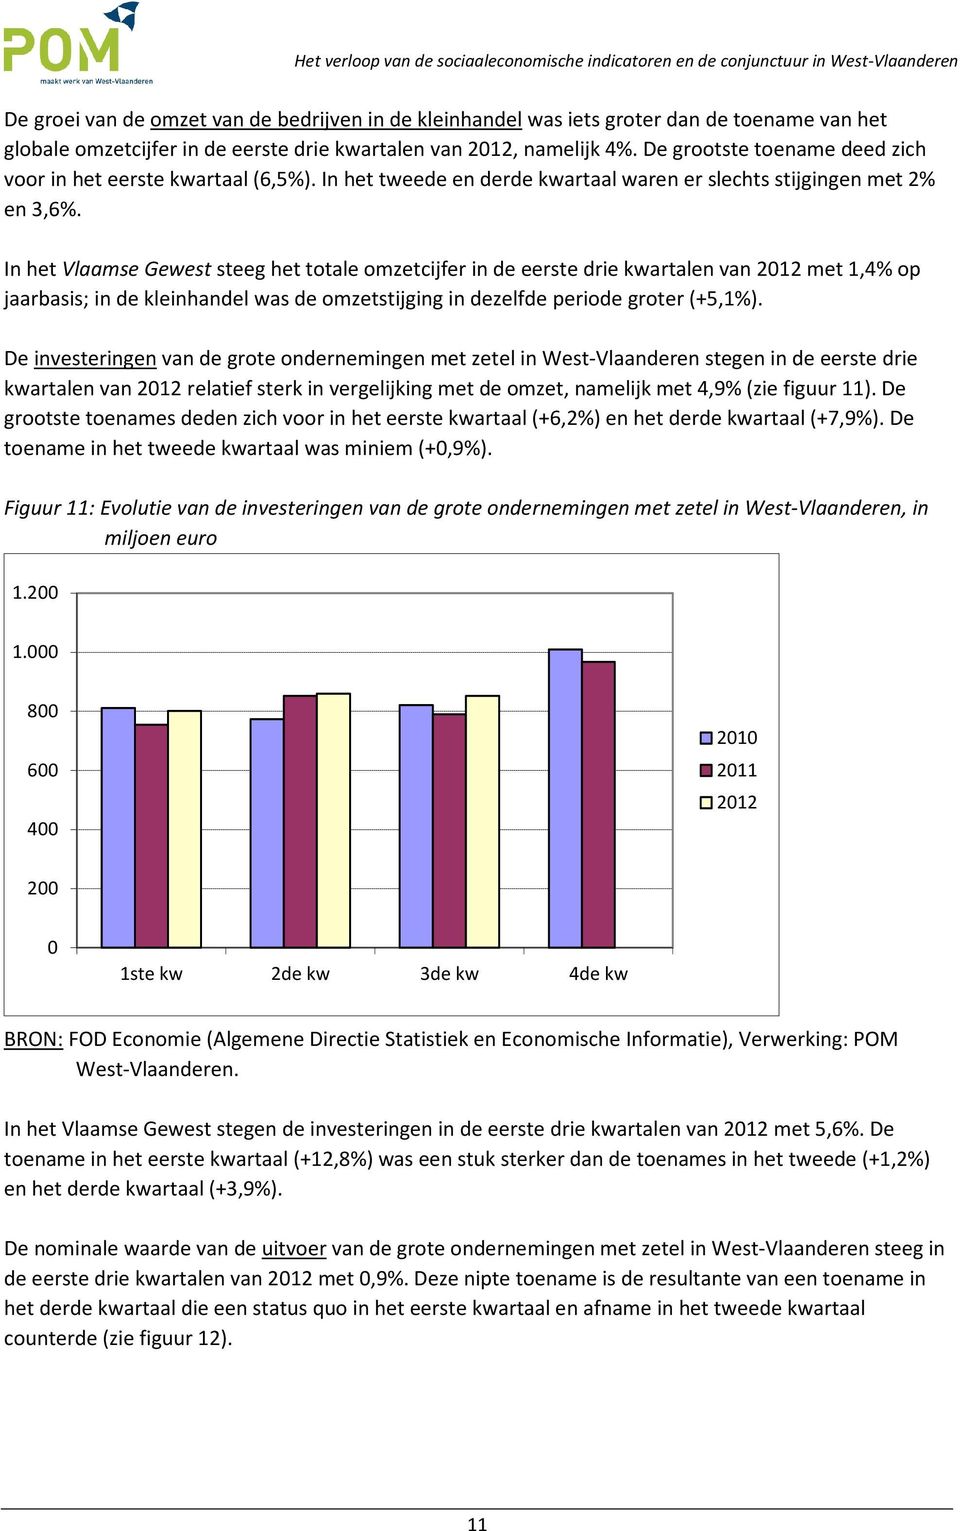 In het Vlaamse Gewest steeg het totale omzetcijfer in de eerste drie kwartalen van 212 met 1,4% op jaarbasis; in de kleinhandel was de omzetstijging in dezelfde periode groter (+5,1%).